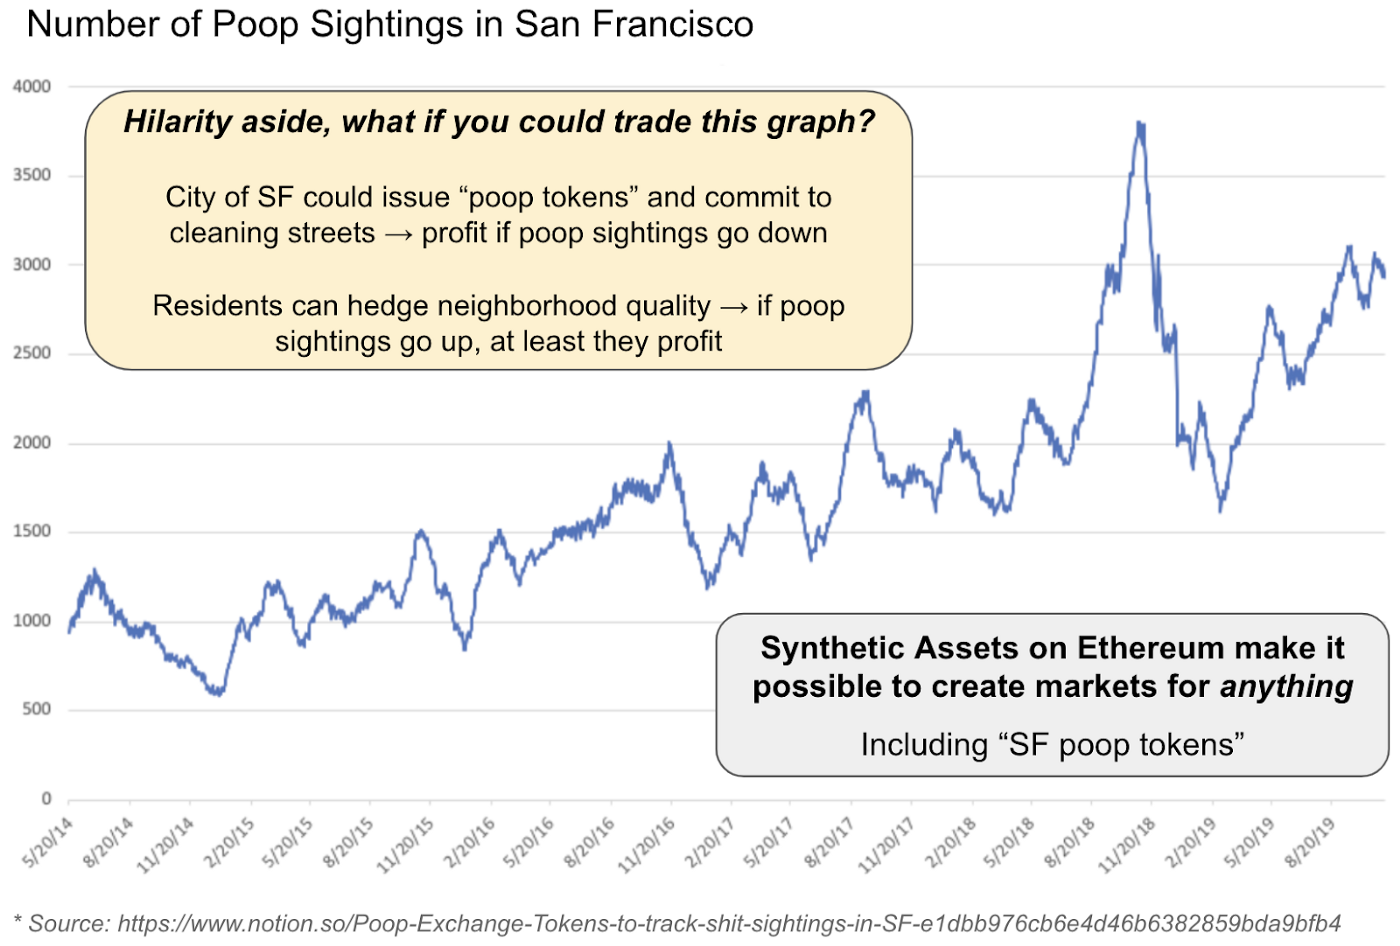 Number of POOP sightings in San Francisco